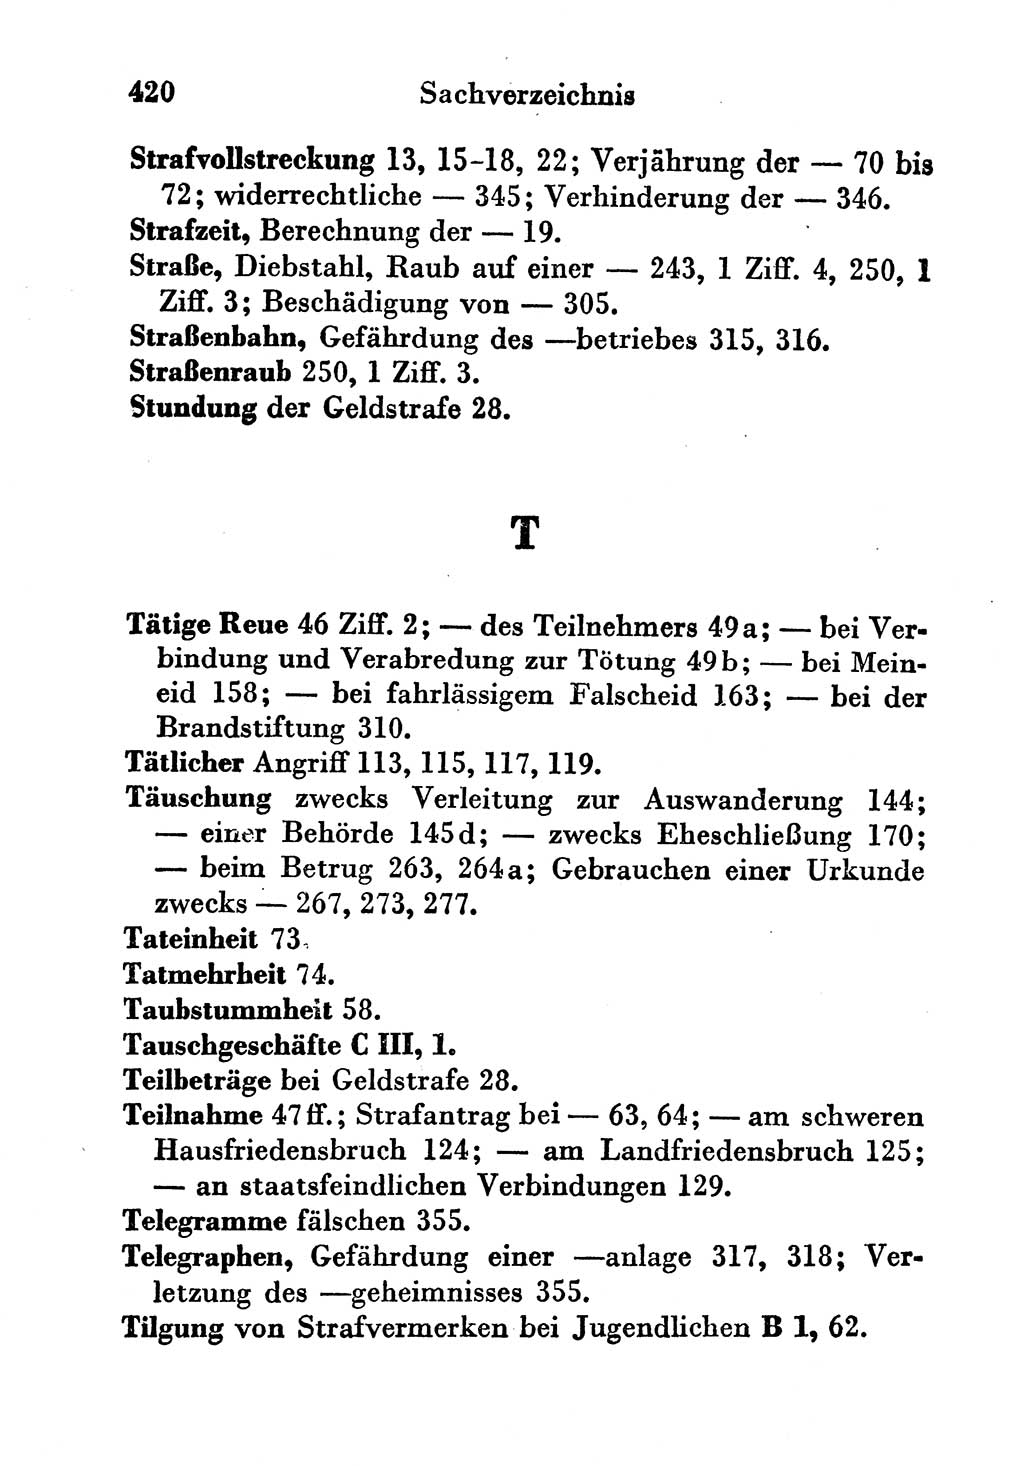 Strafgesetzbuch (StGB) und andere Strafgesetze [Deutsche Demokratische Republik (DDR)] 1956, Seite 420 (StGB Strafges. DDR 1956, S. 420)